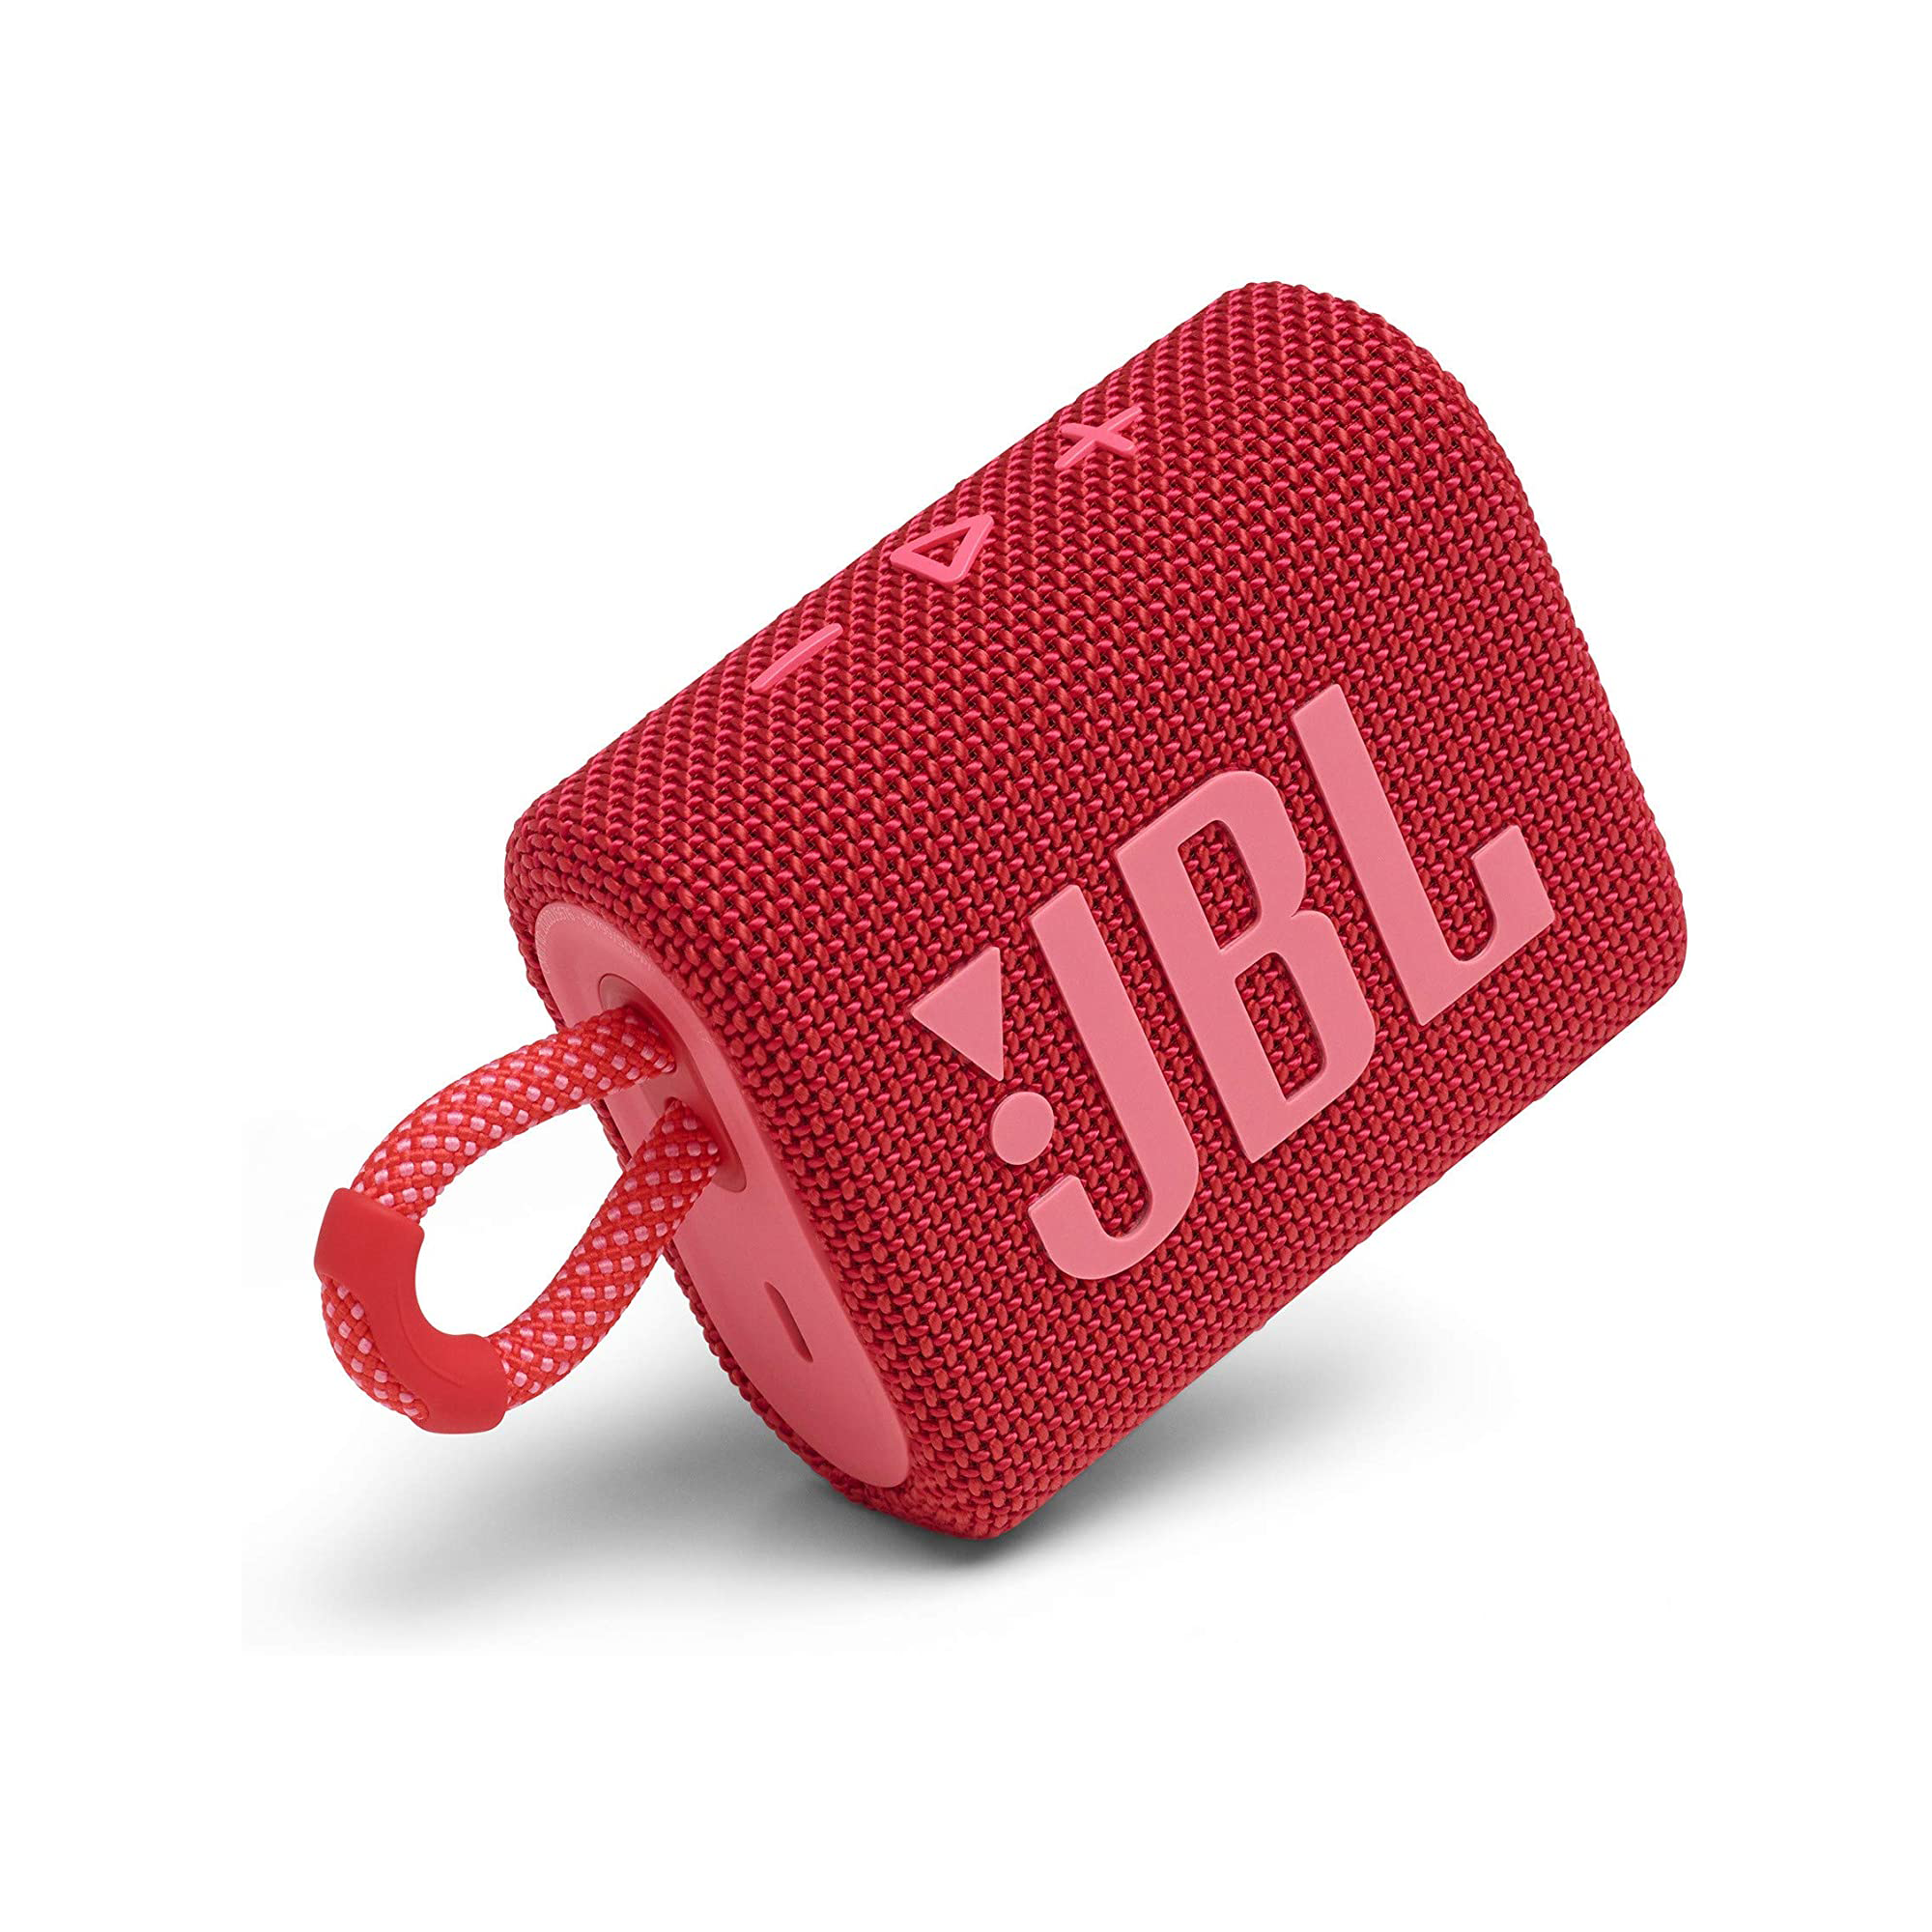 JBL Go - Haut-parleur - pour utilisation mobile - sans fil